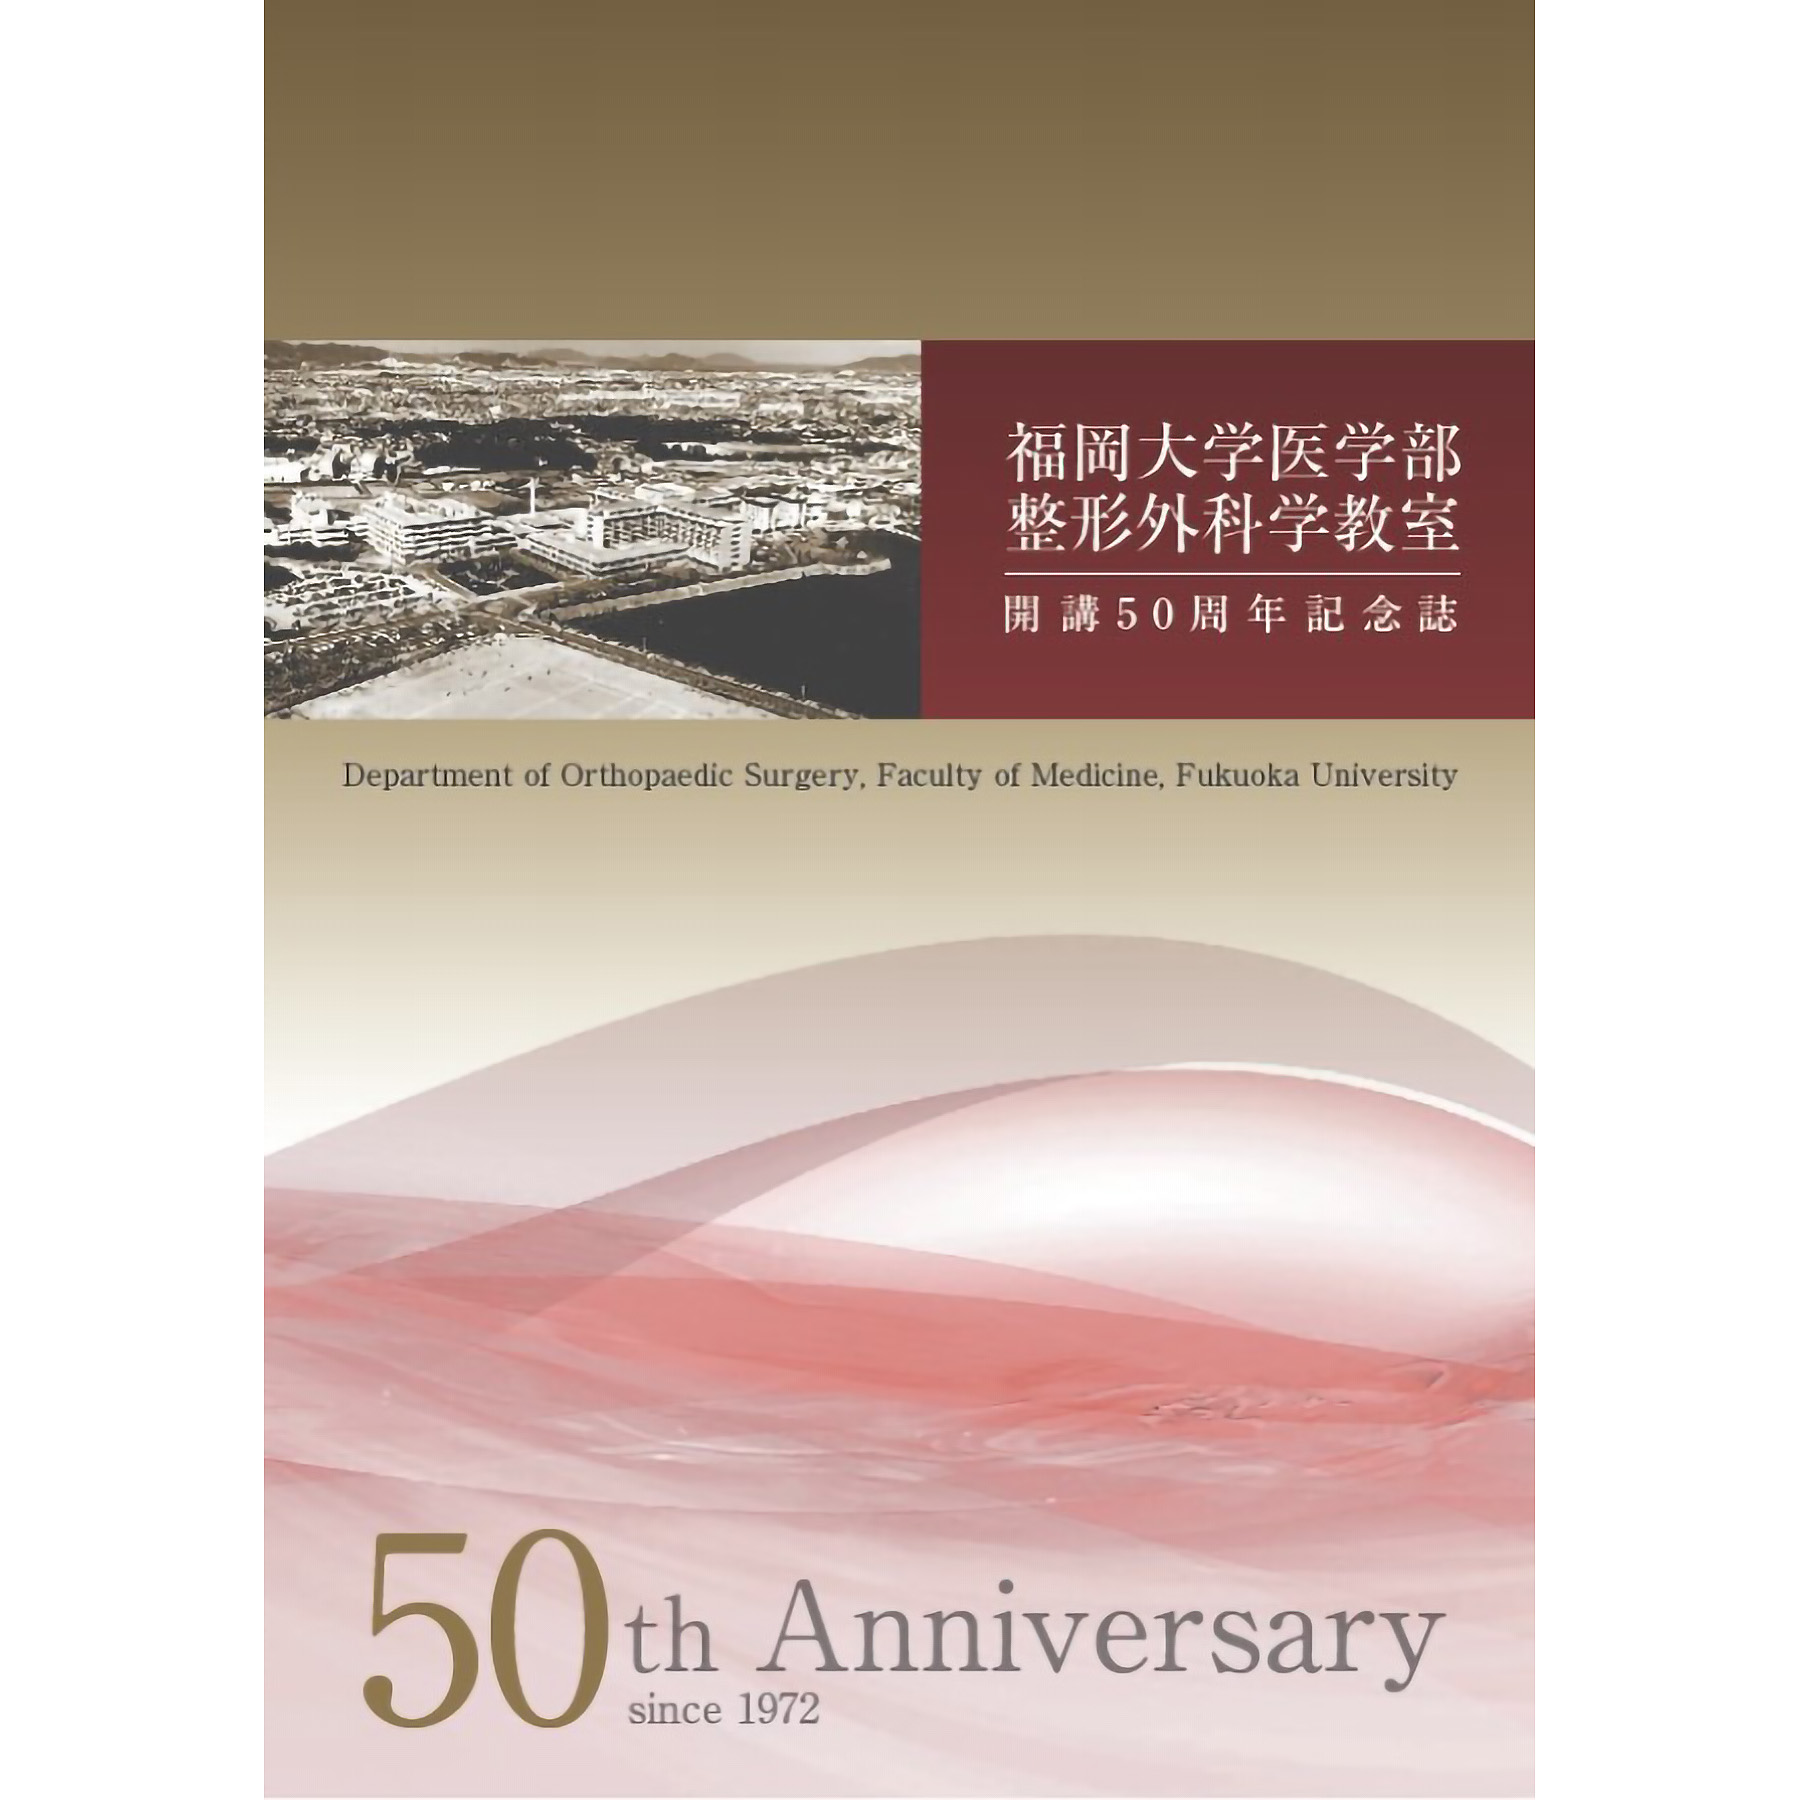 福岡大学医学部整形外科学教室 開講50周年記念誌を発行しました。